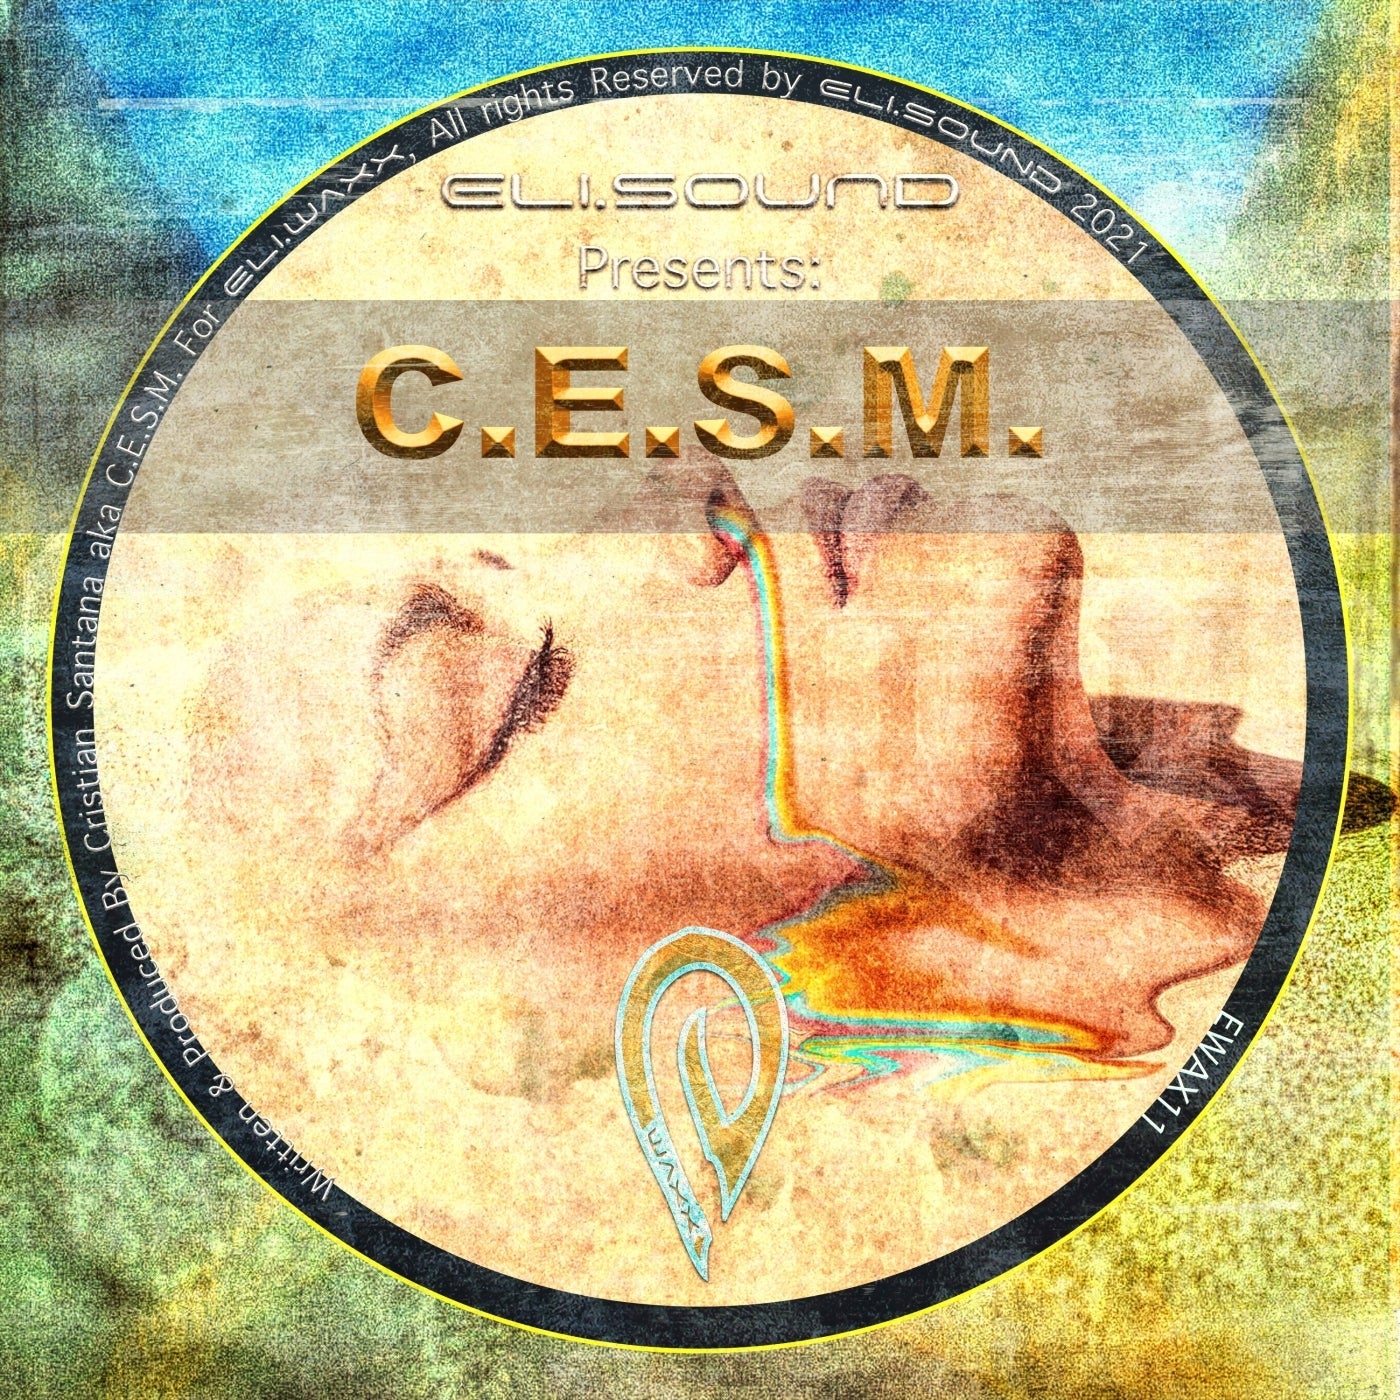 C.E.S.M. – Eli.sound Presents: C.E.S.M. From SPAIN [EWAX11]